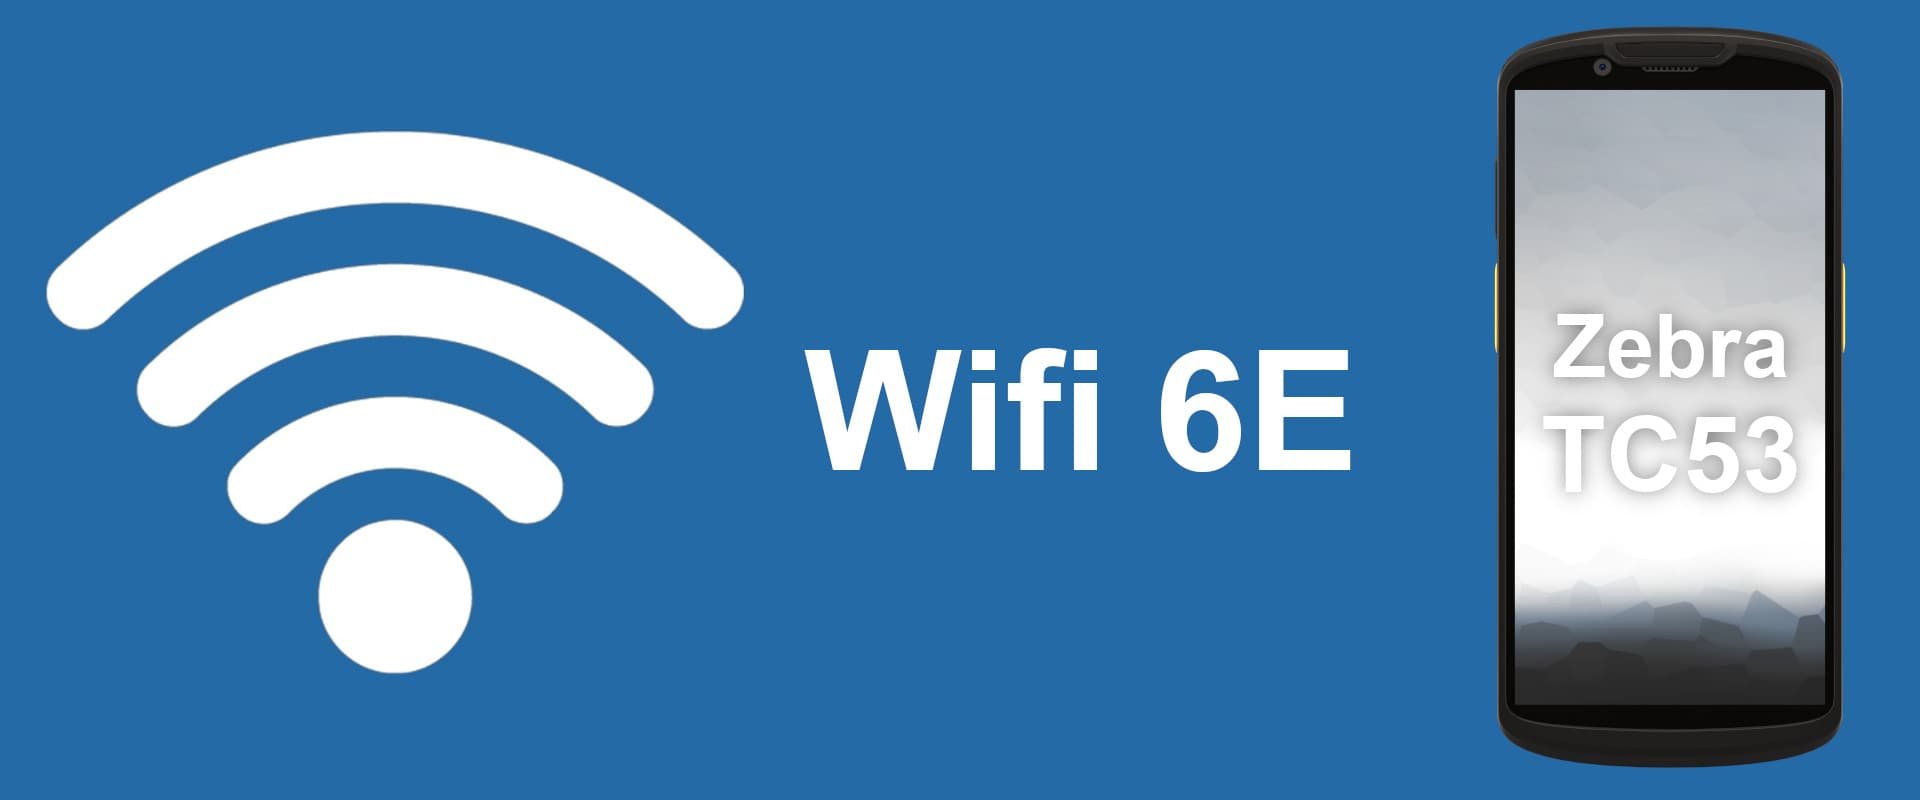 News: Unterschied Wifi 5 und 6 anhand des Zebra TC53 erklärt